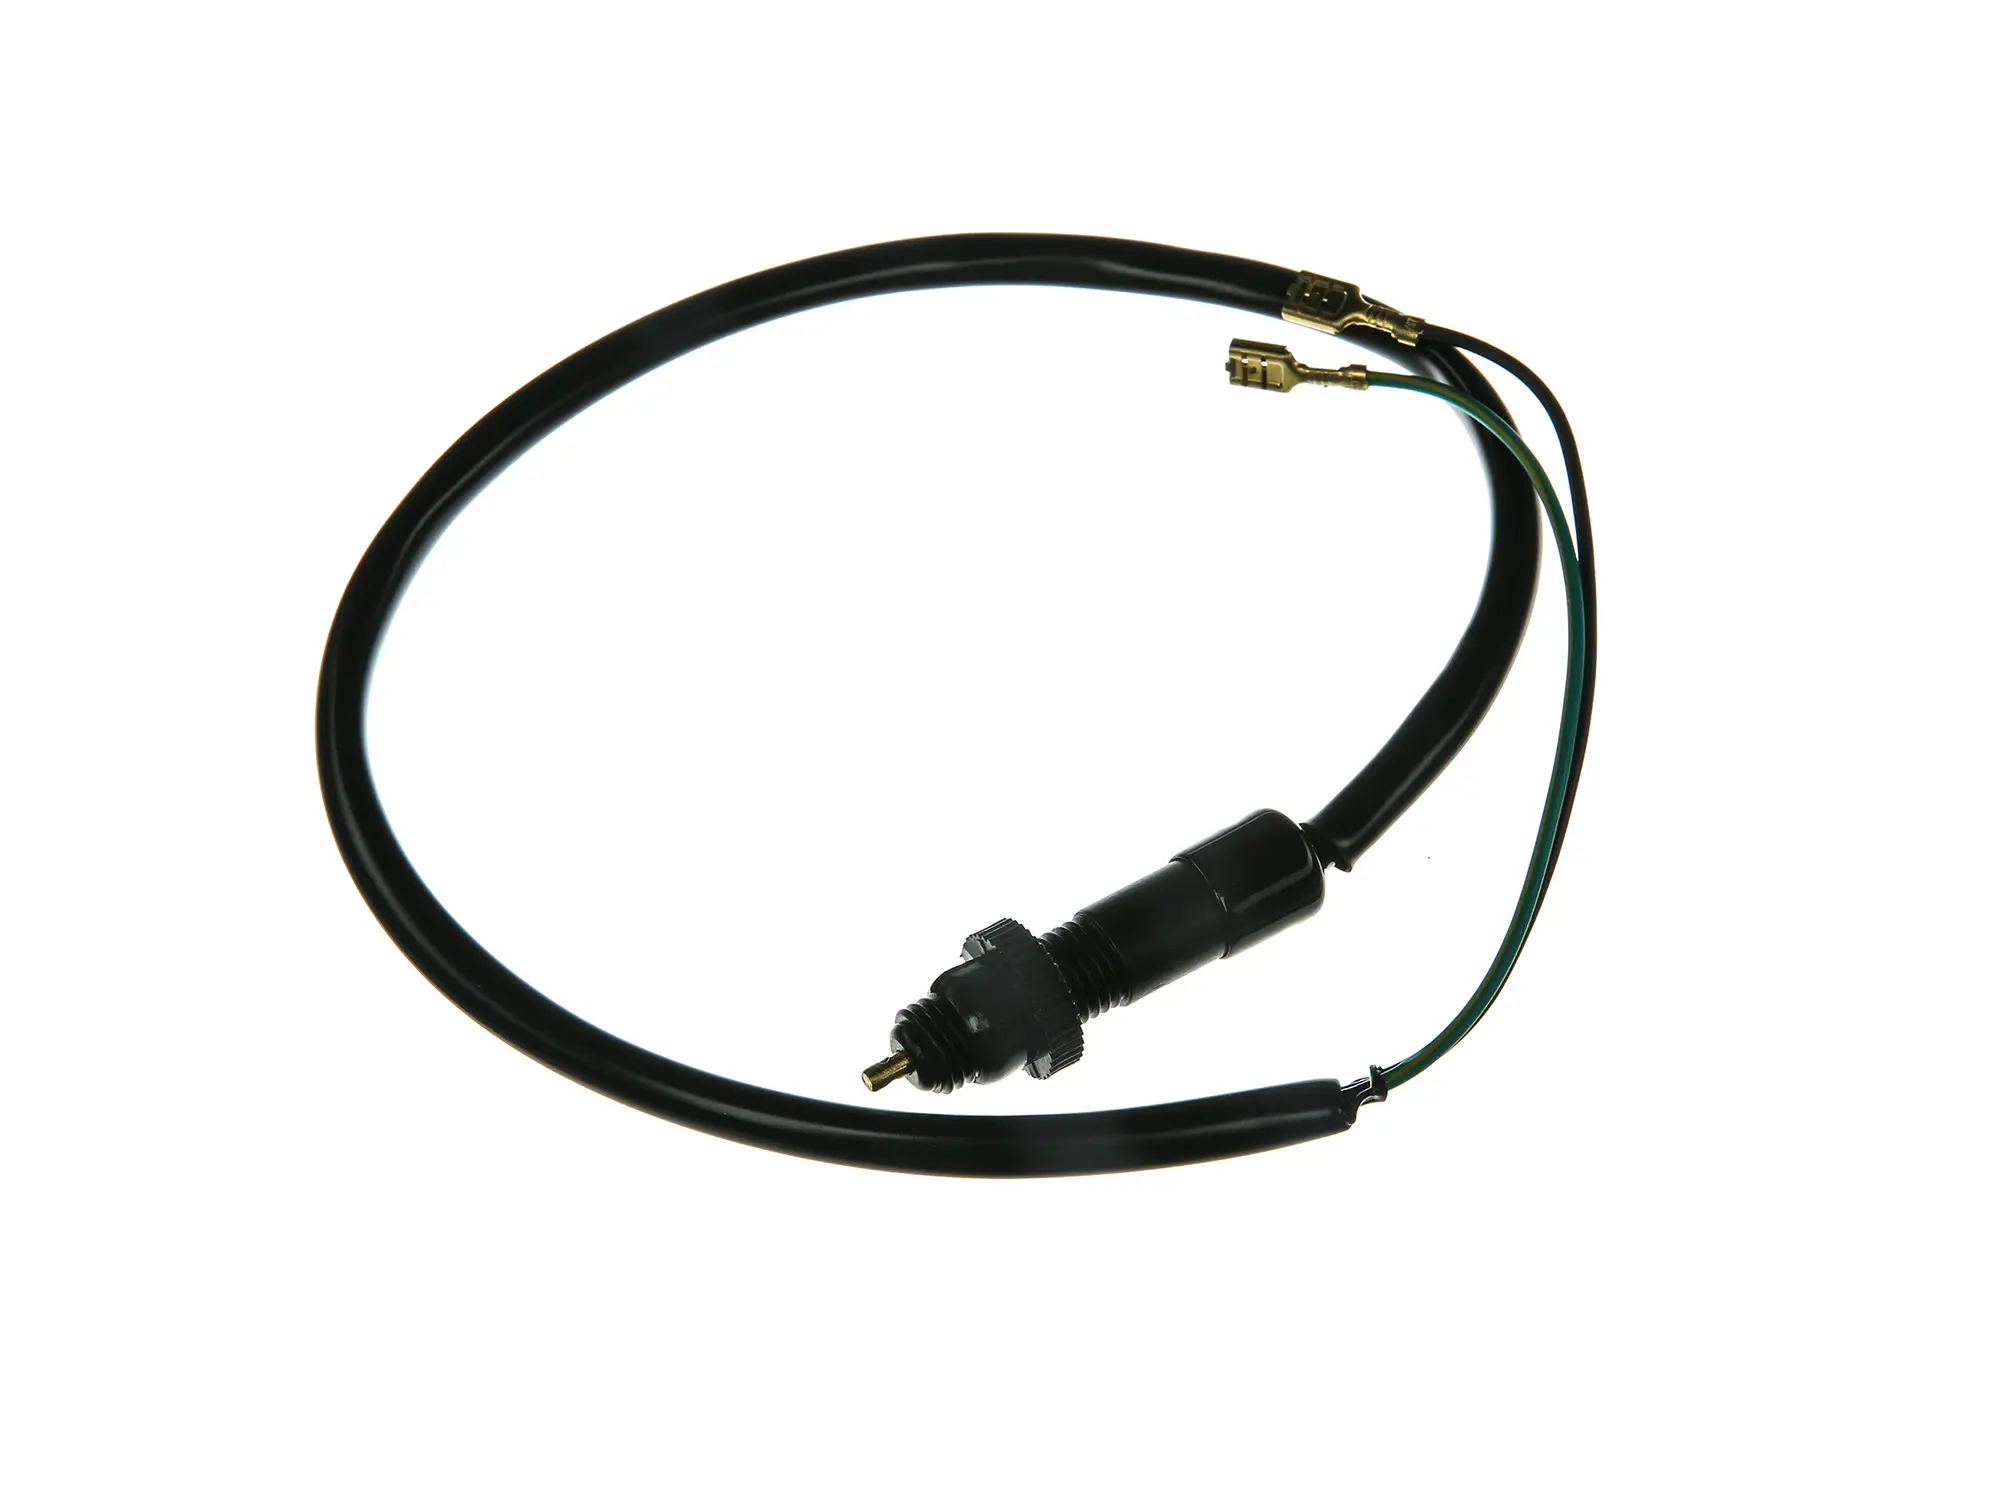 Bremslichttaster für Fußbremse mit Kabel - Simson S51, S53, S70, S83 - MZ ETZ, Art.-Nr.: 10001749 - Bild 1